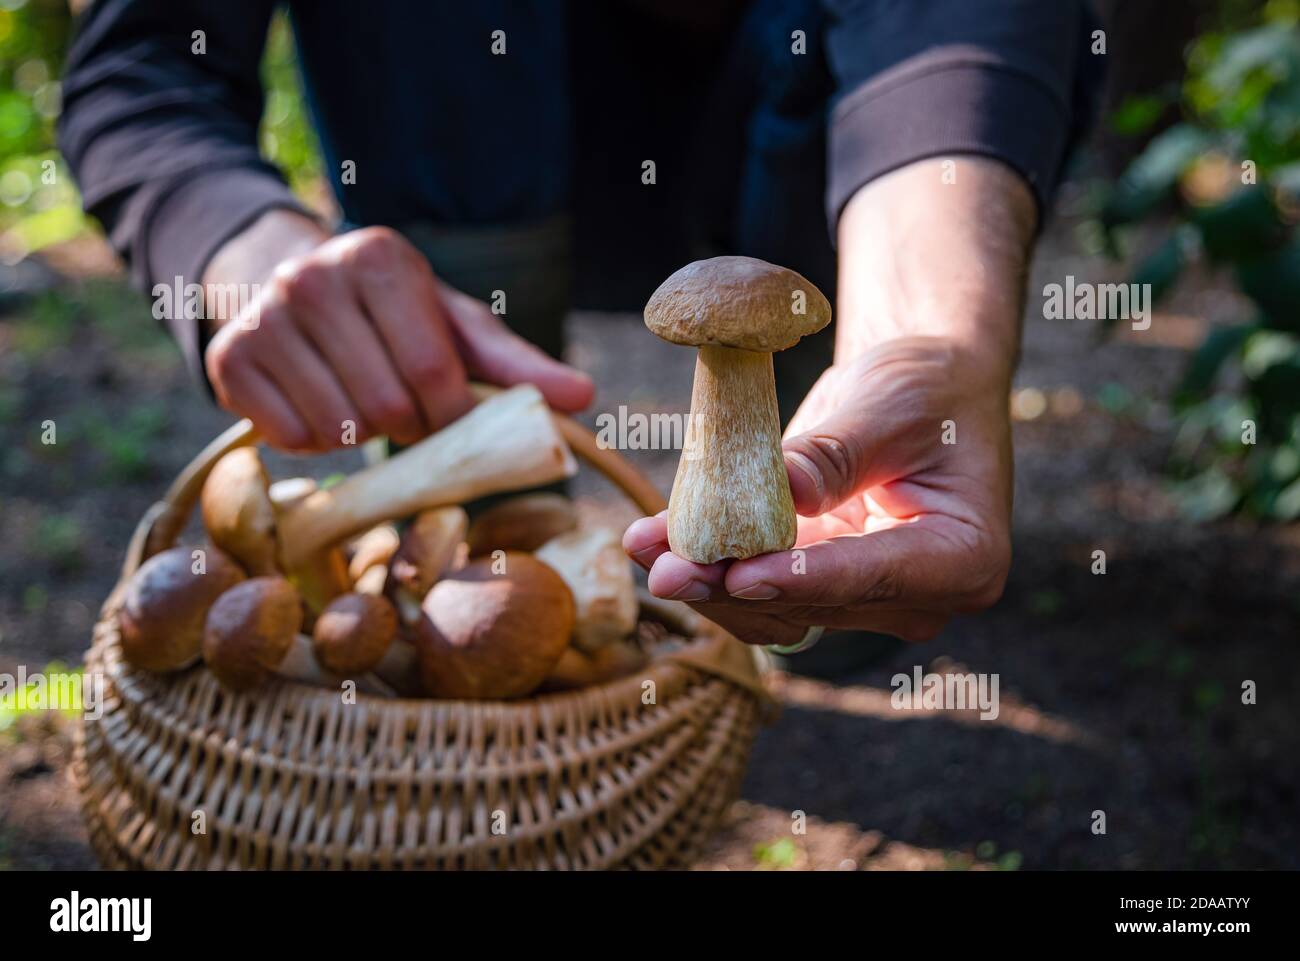 Mano che tiene Boltetus edulis vicino al cesto pieno di vimini di funghi nella foresta. Stagione di raccolta dei funghi nei boschi in autunno. Foto Stock